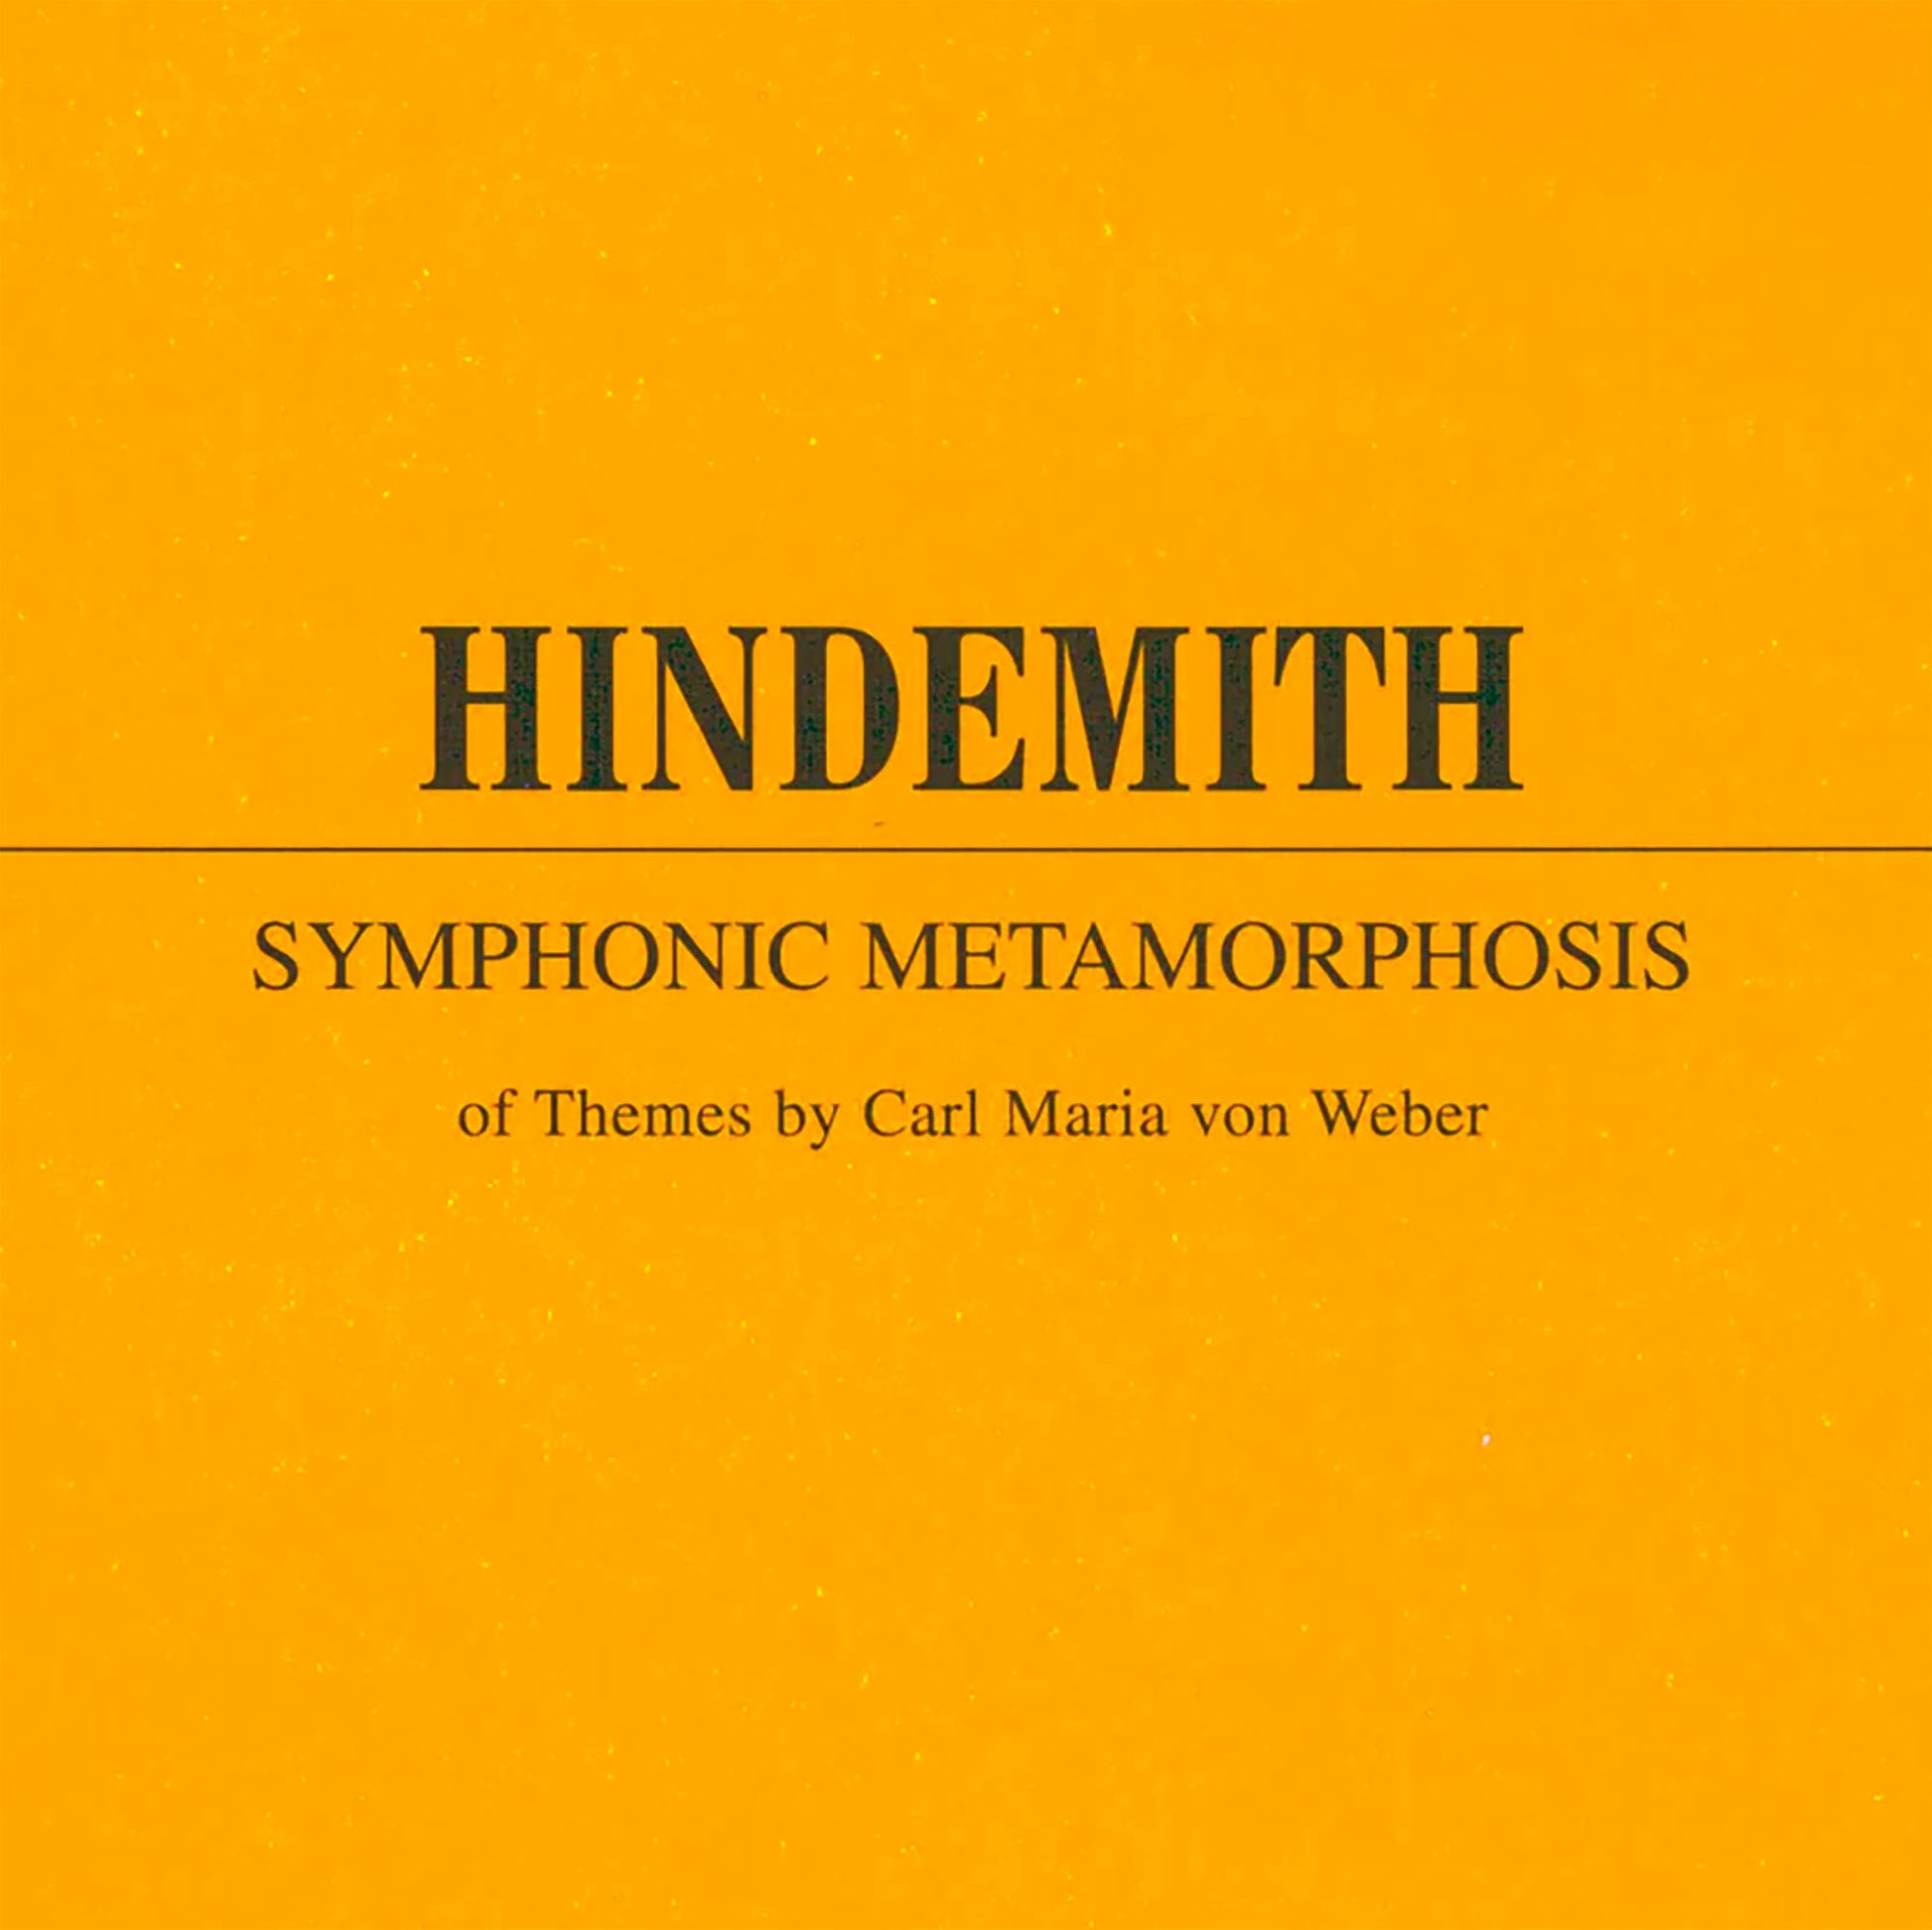 Paul Hindemith "Symphonic Metamorphosis" — Bass Clarinet part